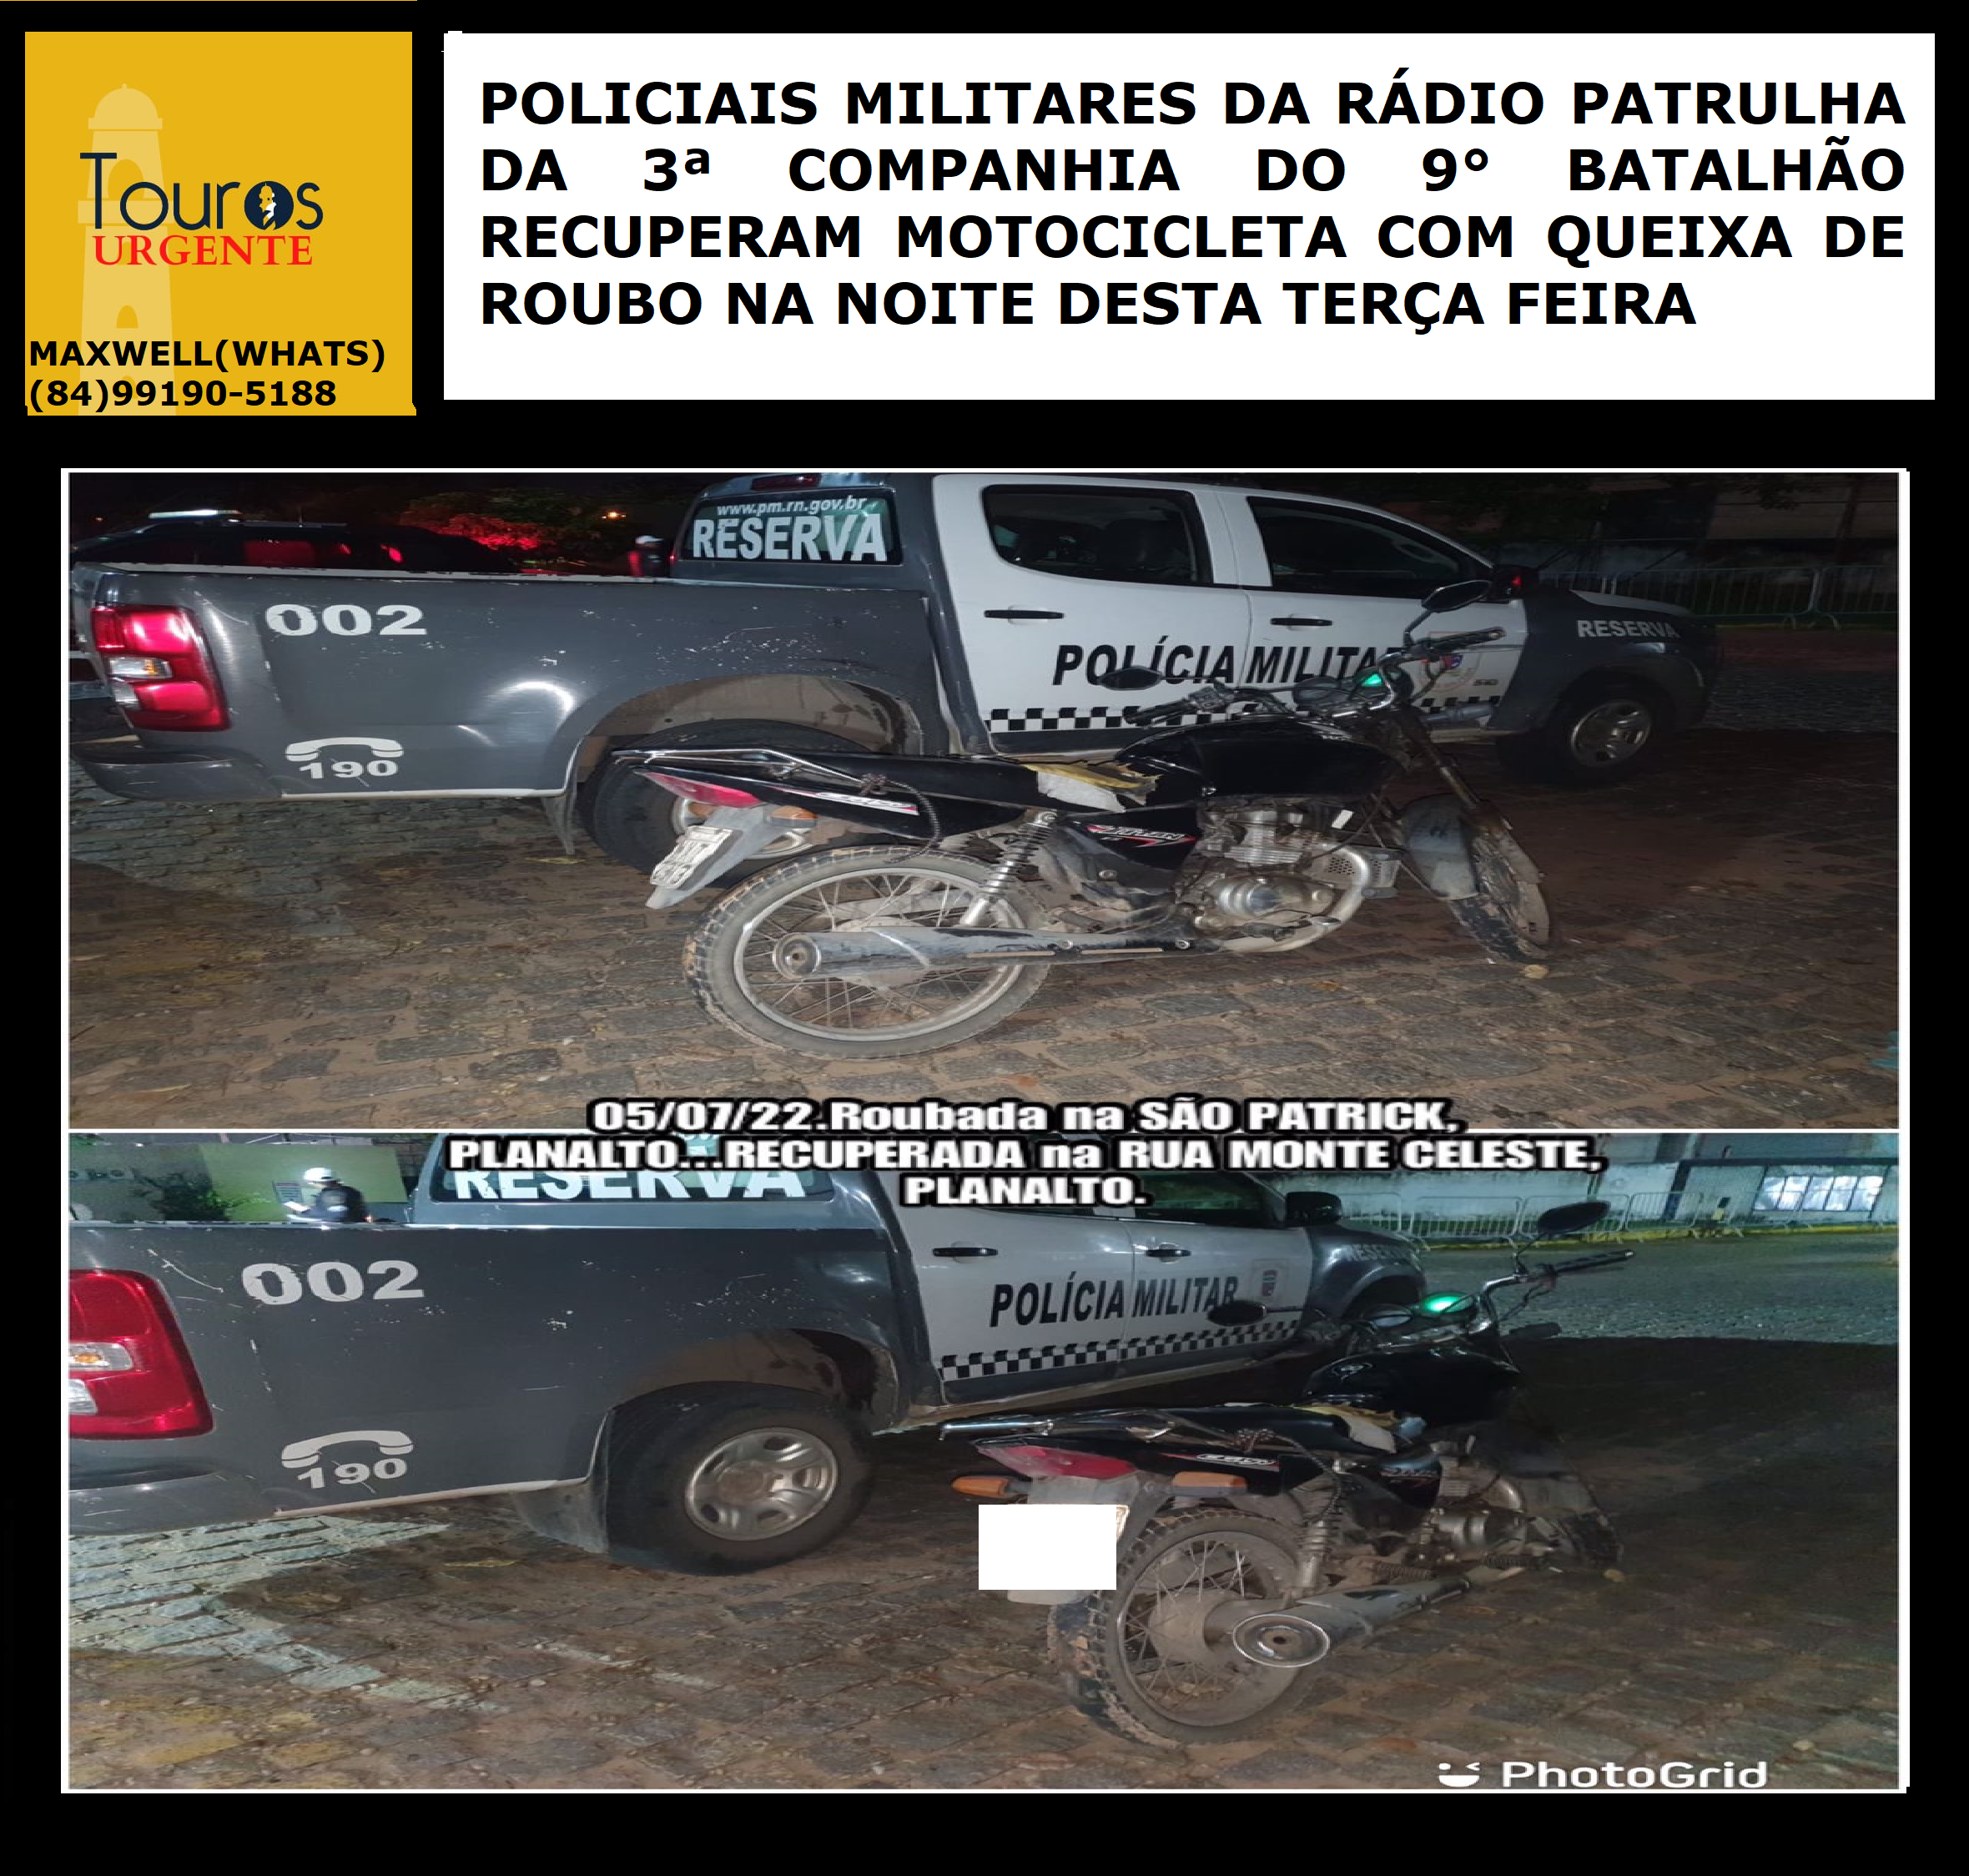 ​POLICIAIS MILITARES DA RÁDIO PATRULHA DA 3ª COMPANHIA DO 9° BATALHÃO